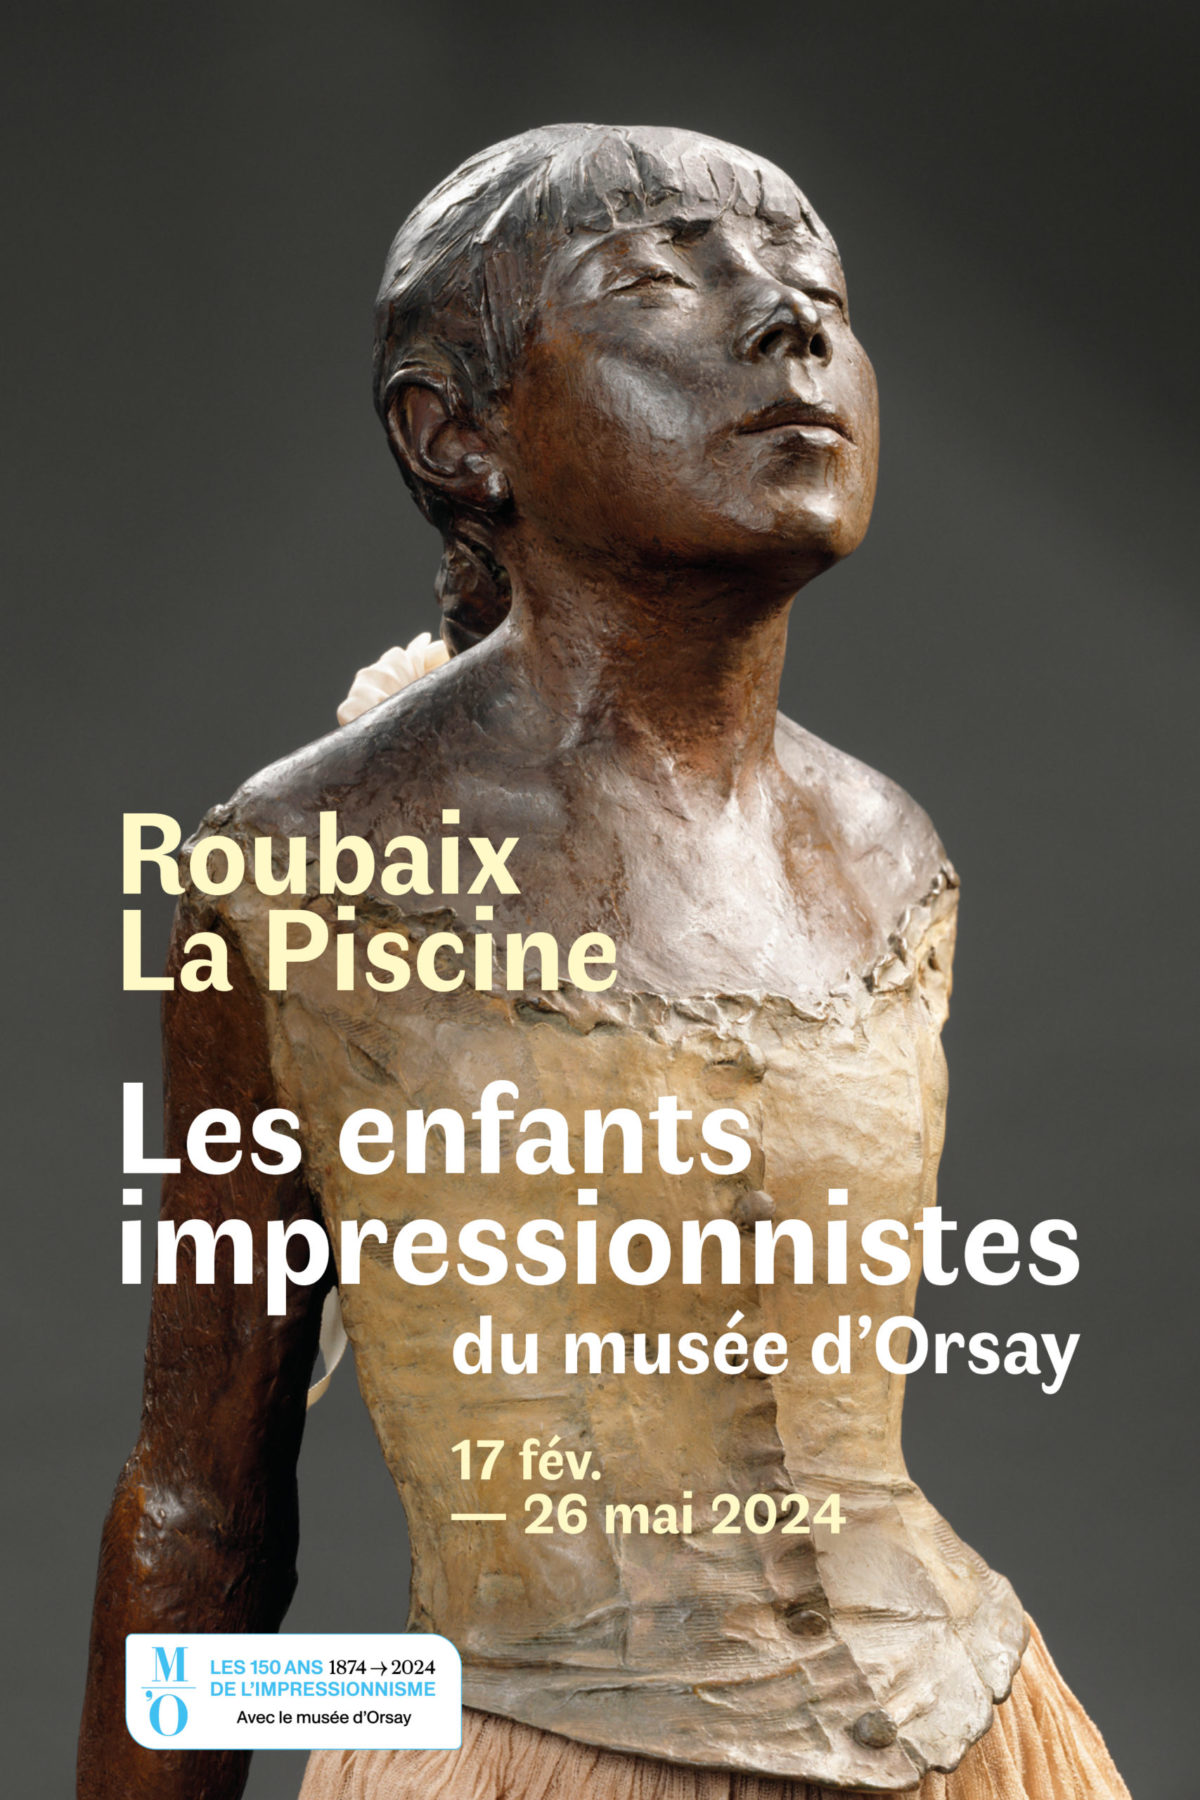 Affiche "Les enfants impressionnistes du musée d'Orsay" La Piscine- Roubaix